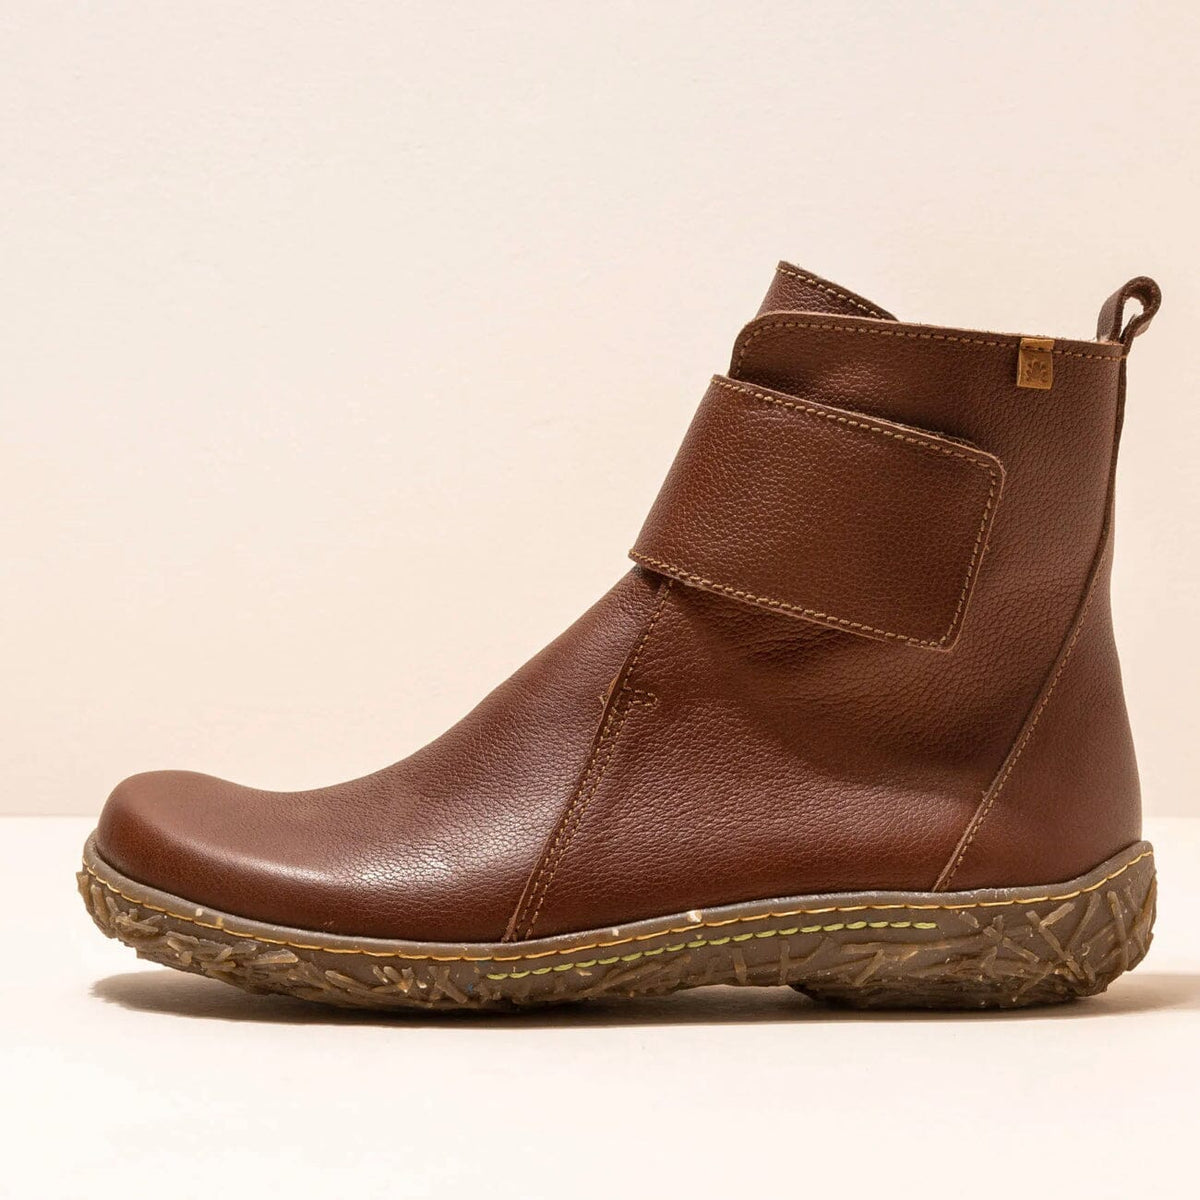 El Naturalista, NIDO ELLA, Boot, Natural Grain Leather, Wood Boots El Natura Lista 